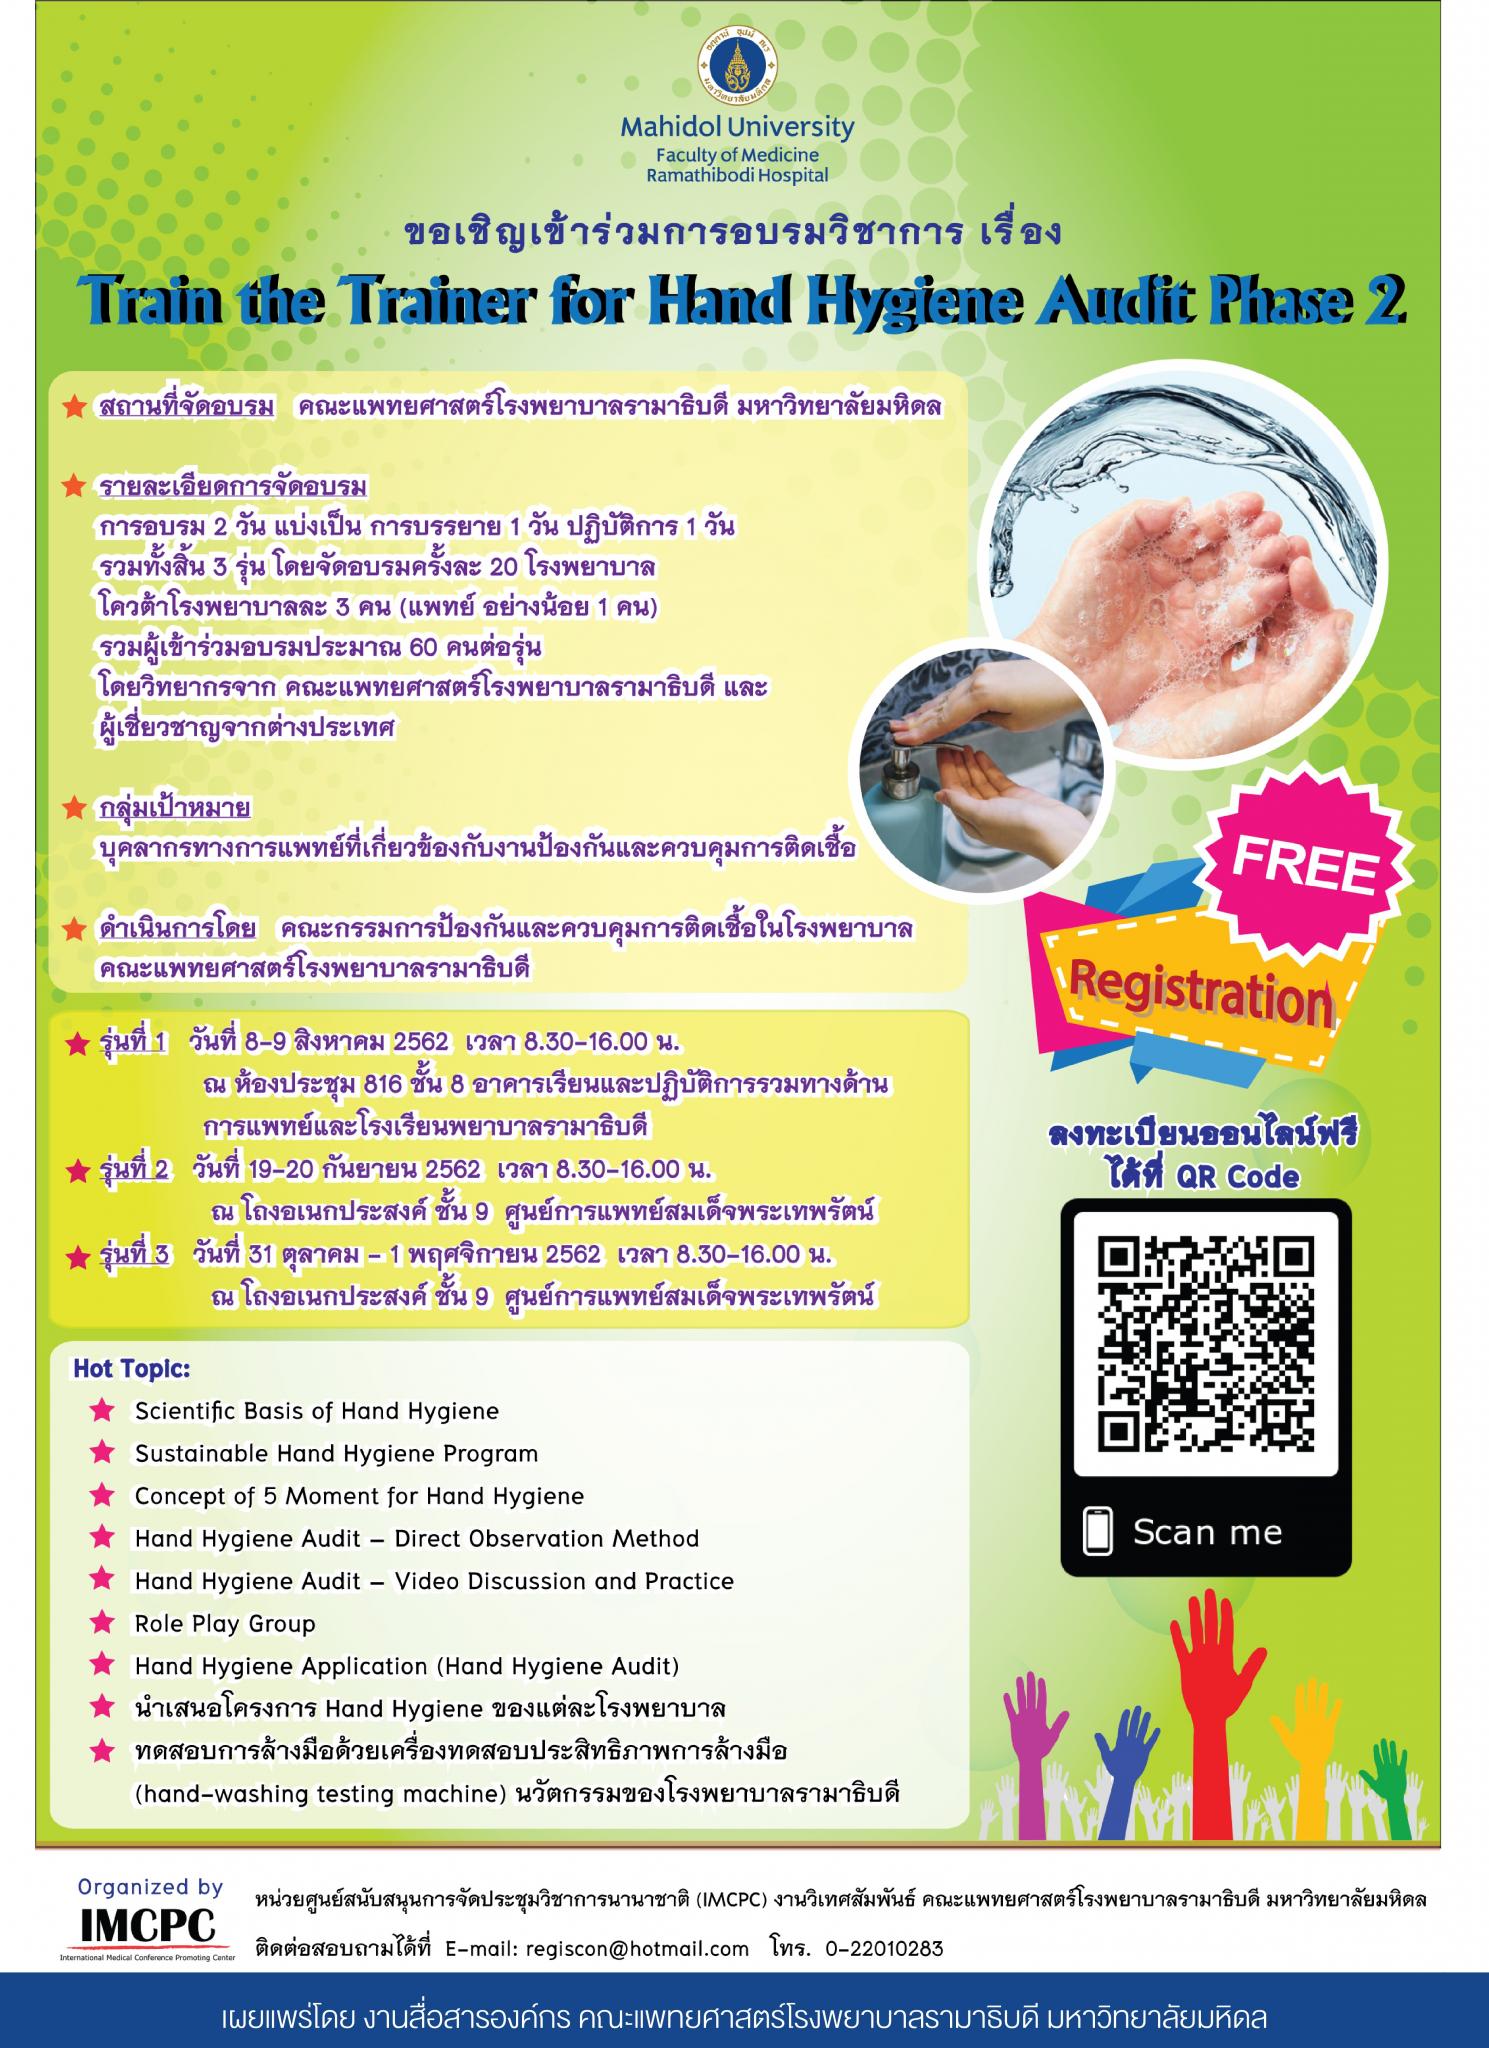 ขอเชิญเข้าร่วมการอบรมวิชาการ เรื่อง Train the Trainer for Hand Hygiene Audit Phase 2